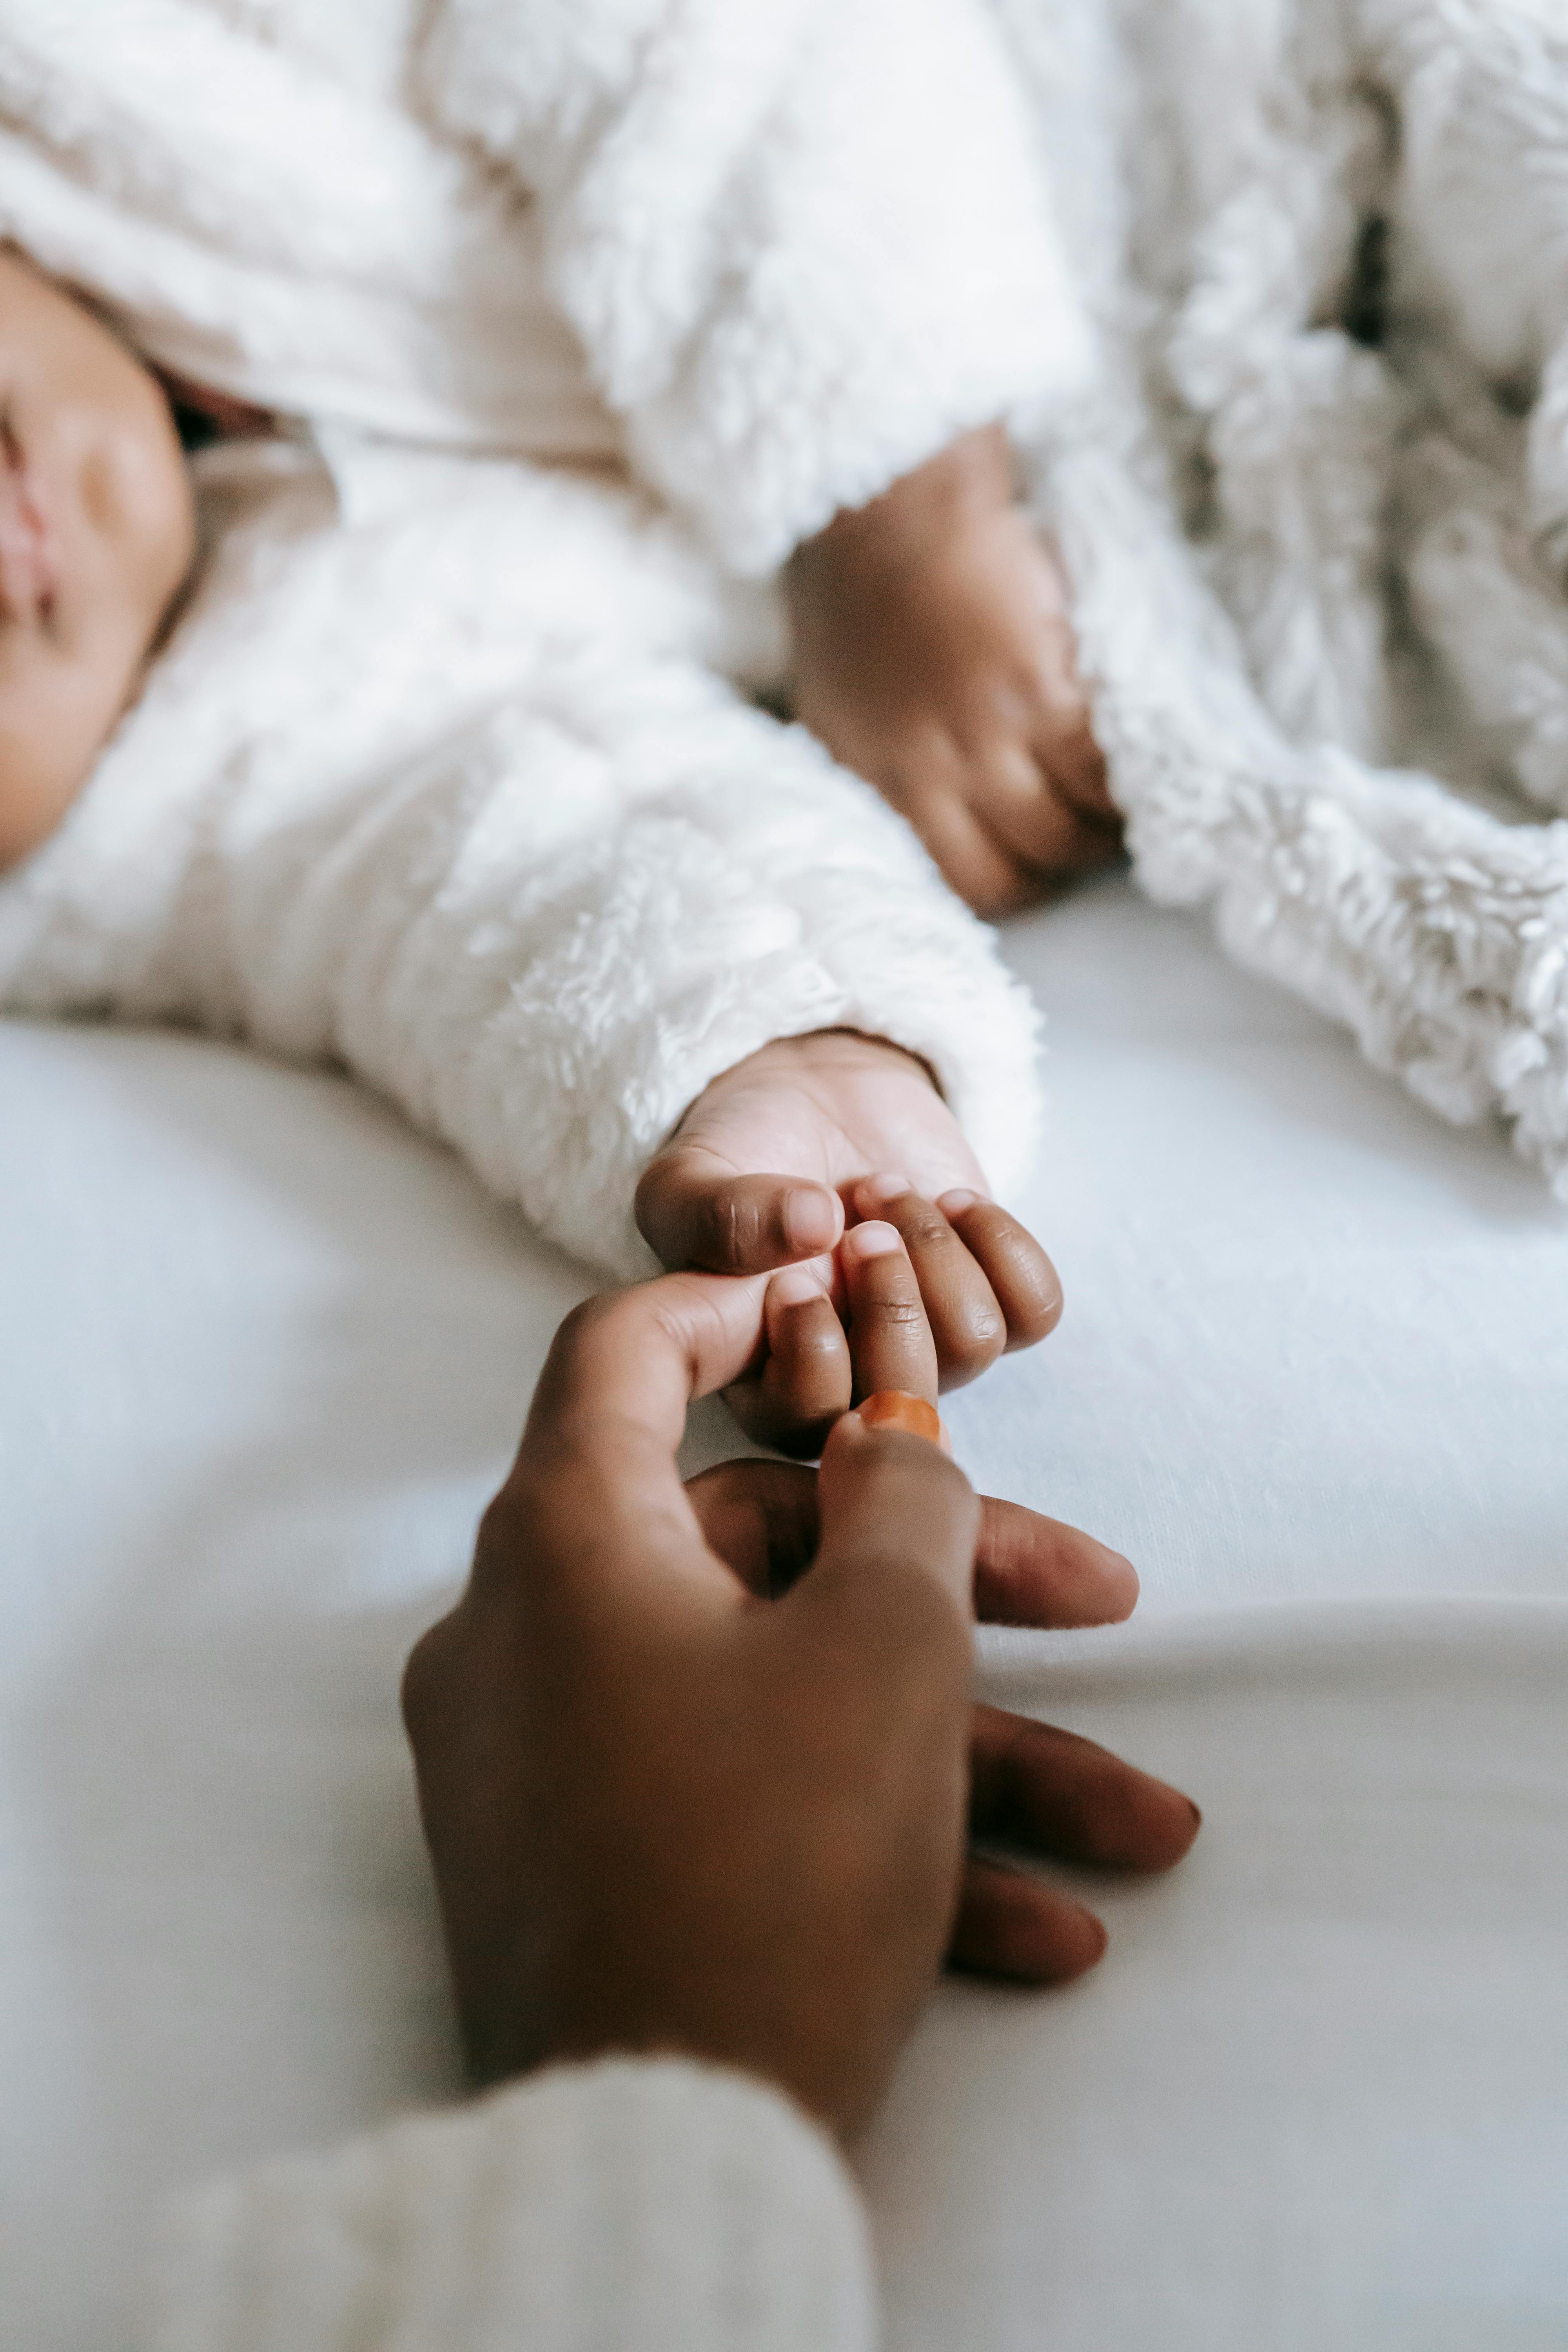 La main d'une femme touchant la main d'un bébé | Source : Pexels